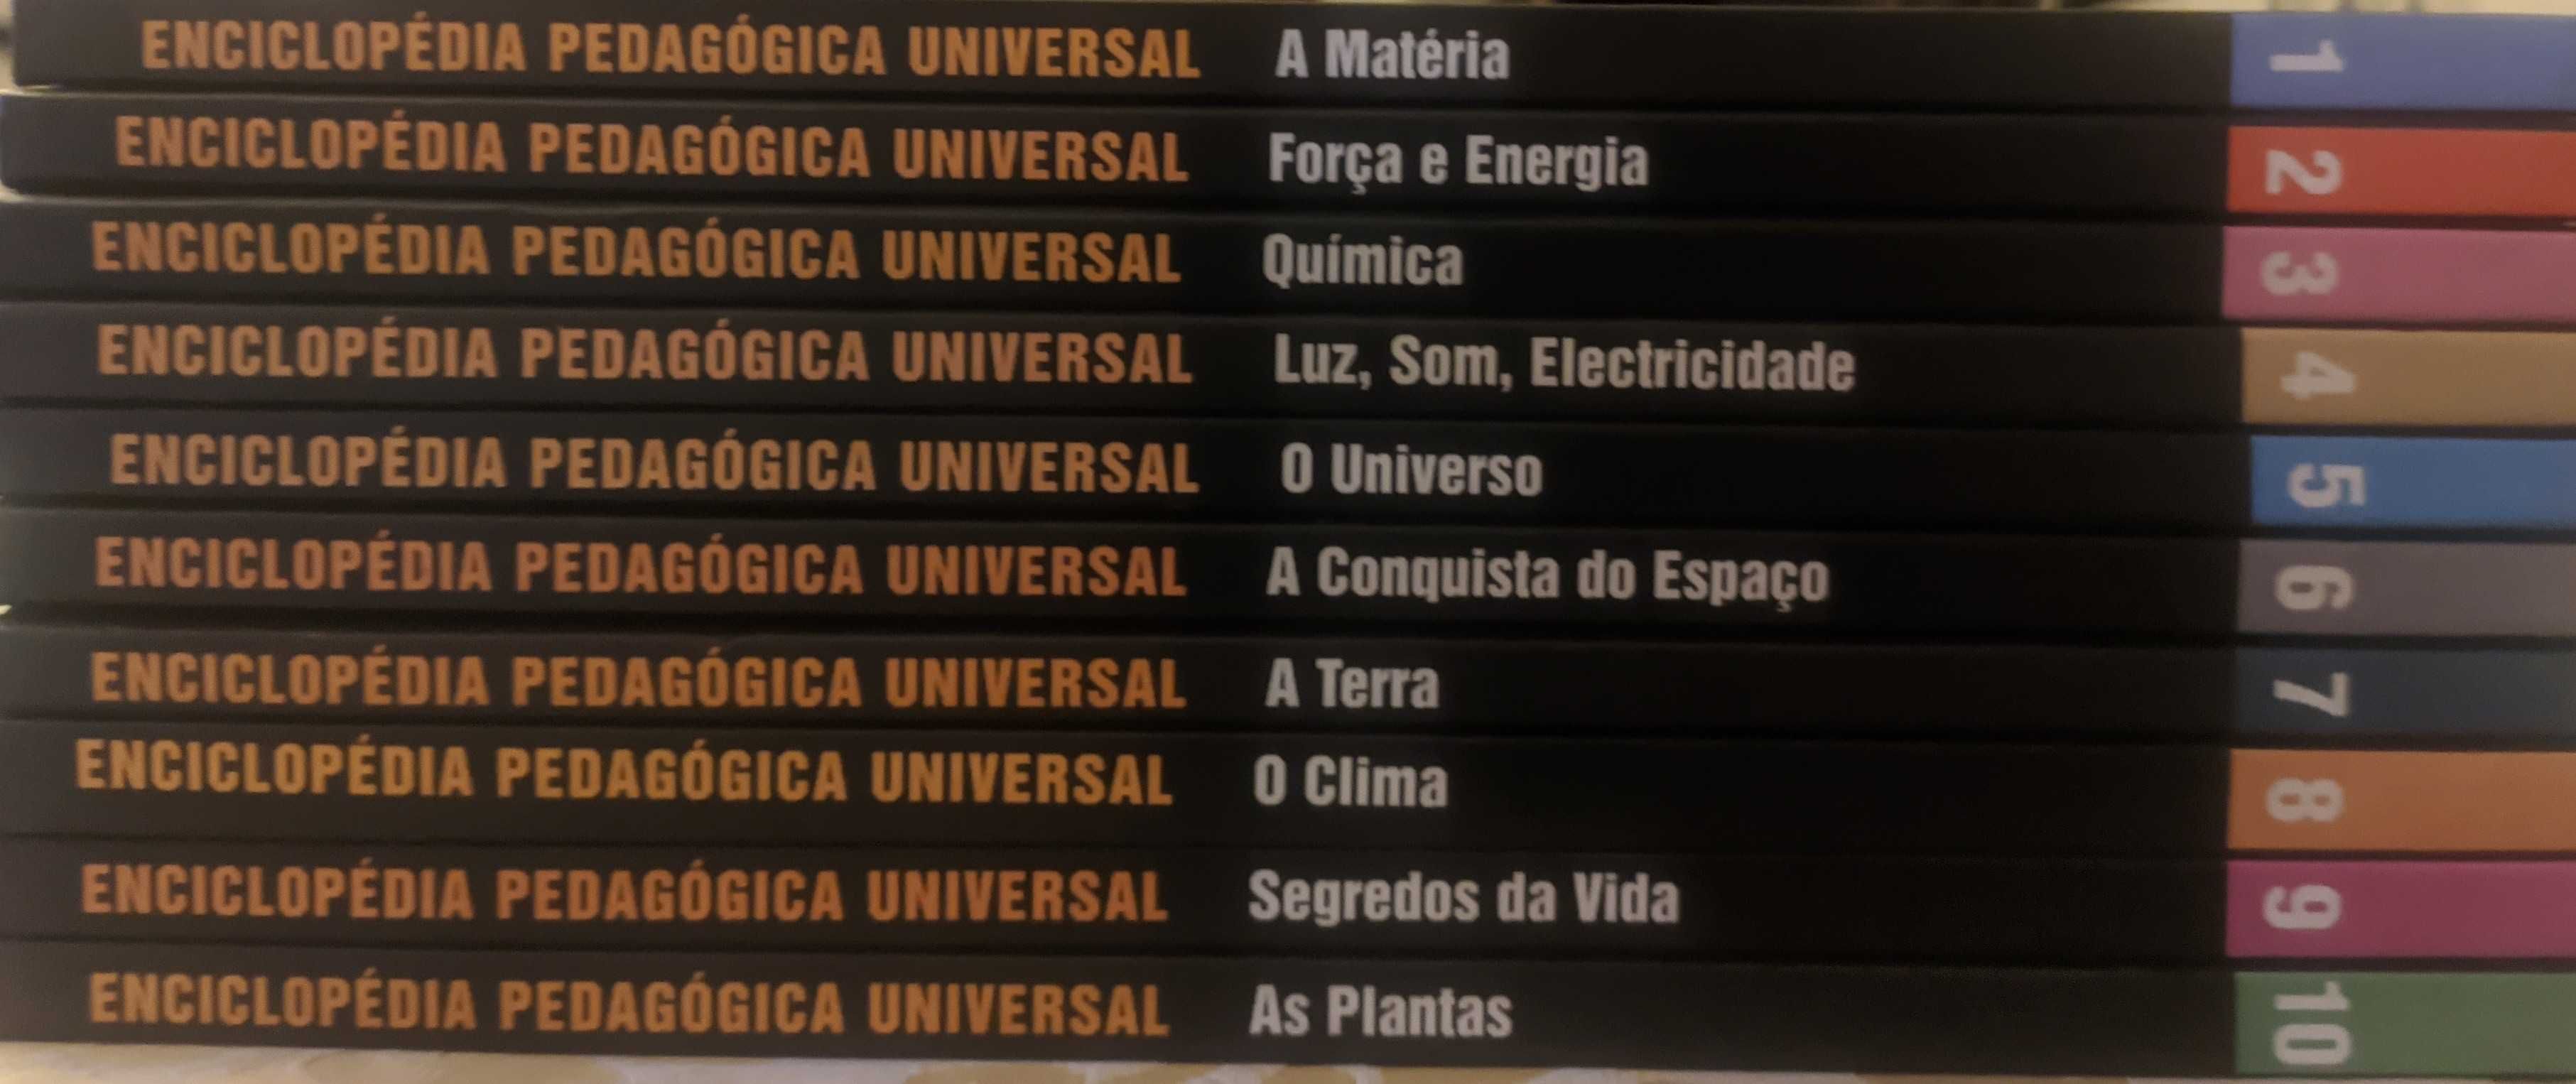 Enciclopédia Pedagógica Universal Hiperlivro